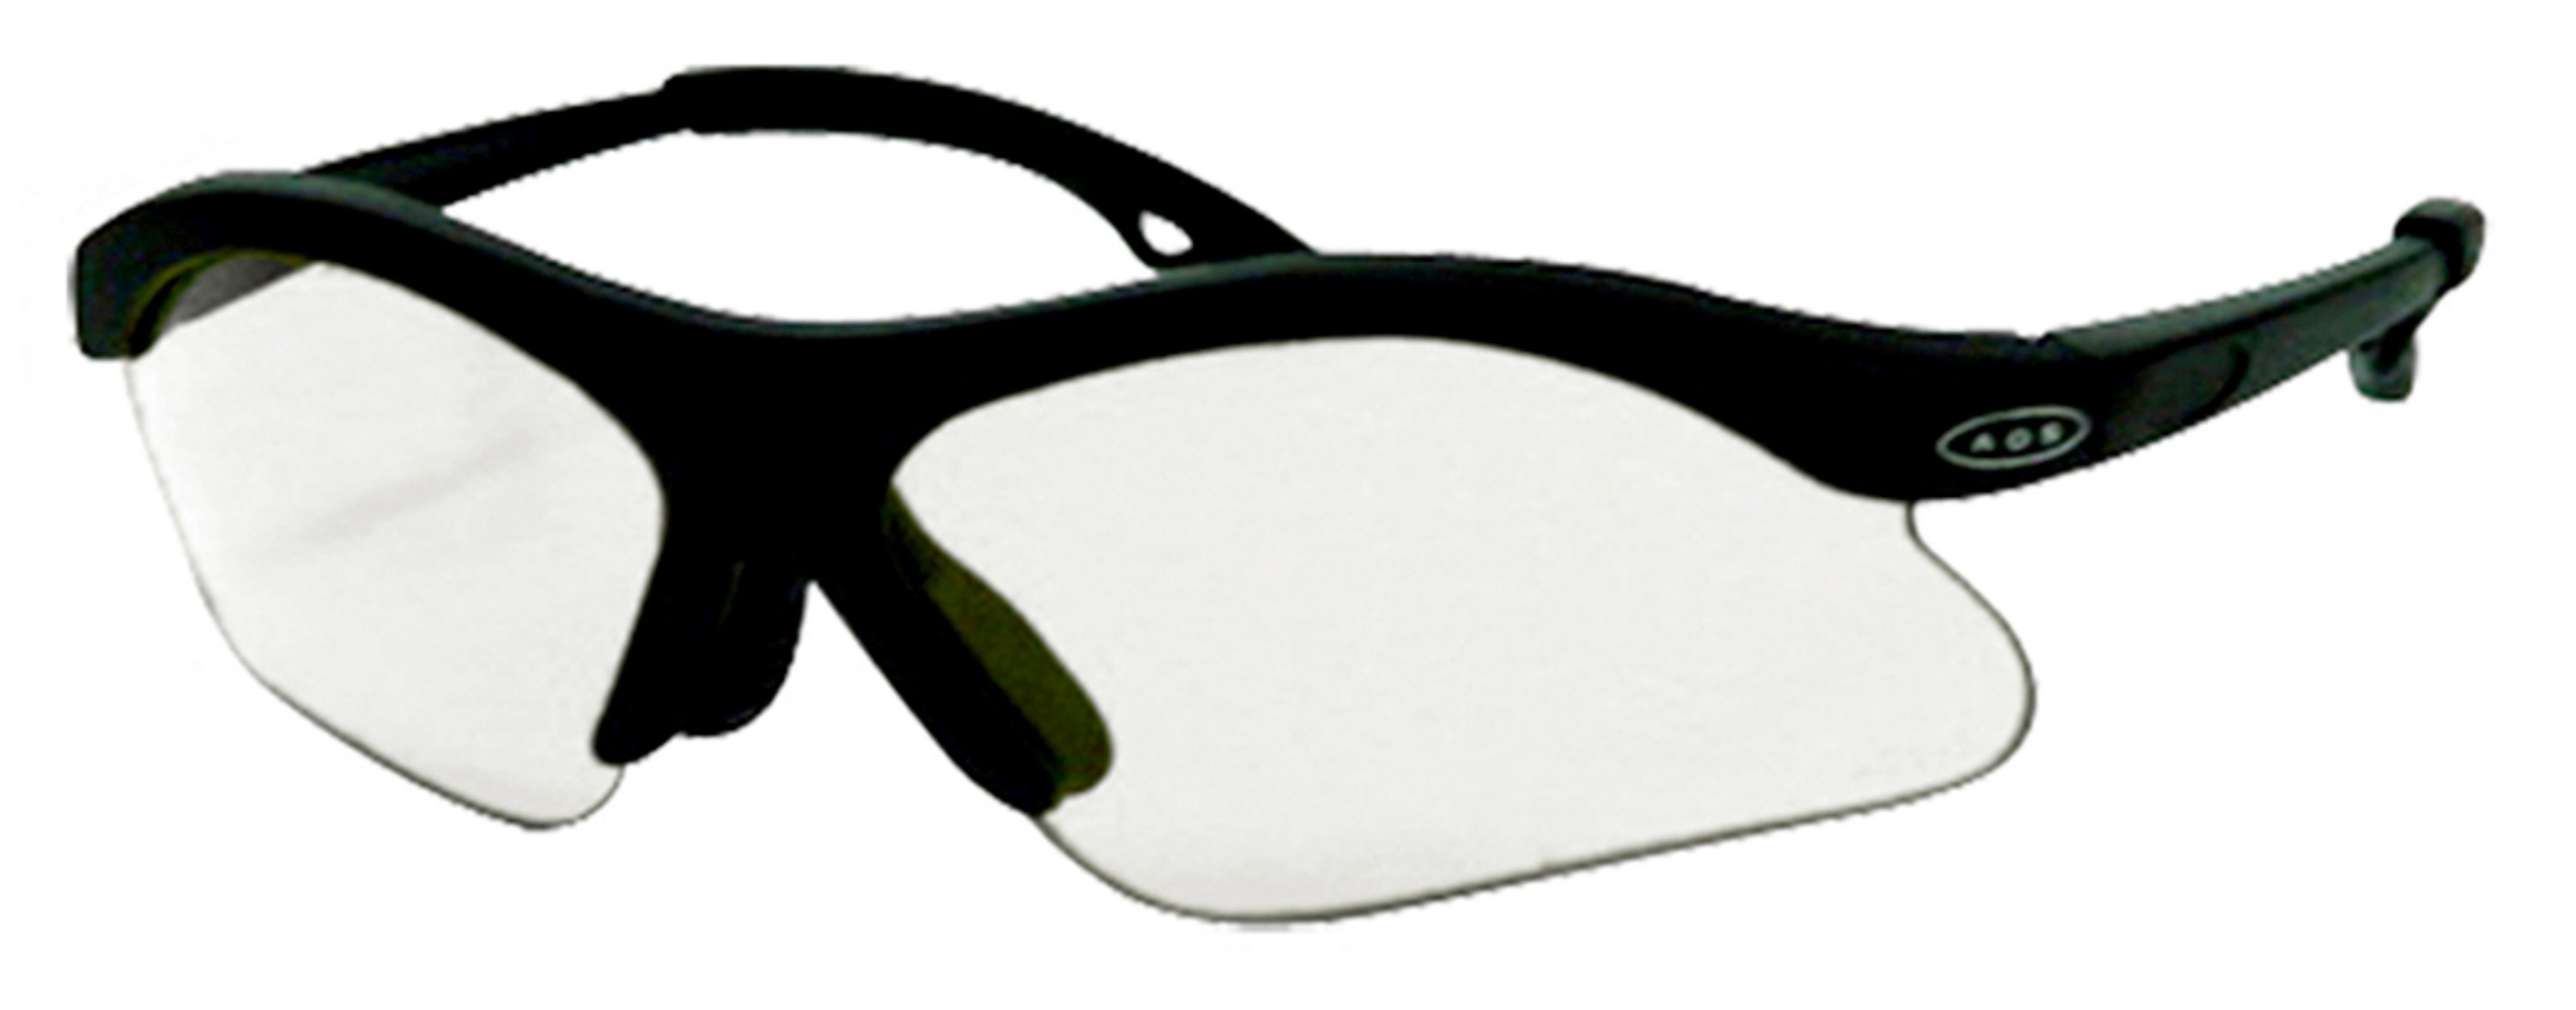 Peltor Youth Shooting Eyewear with Free Earplugs, Clear, 1 pair/pack - image 1 of 2